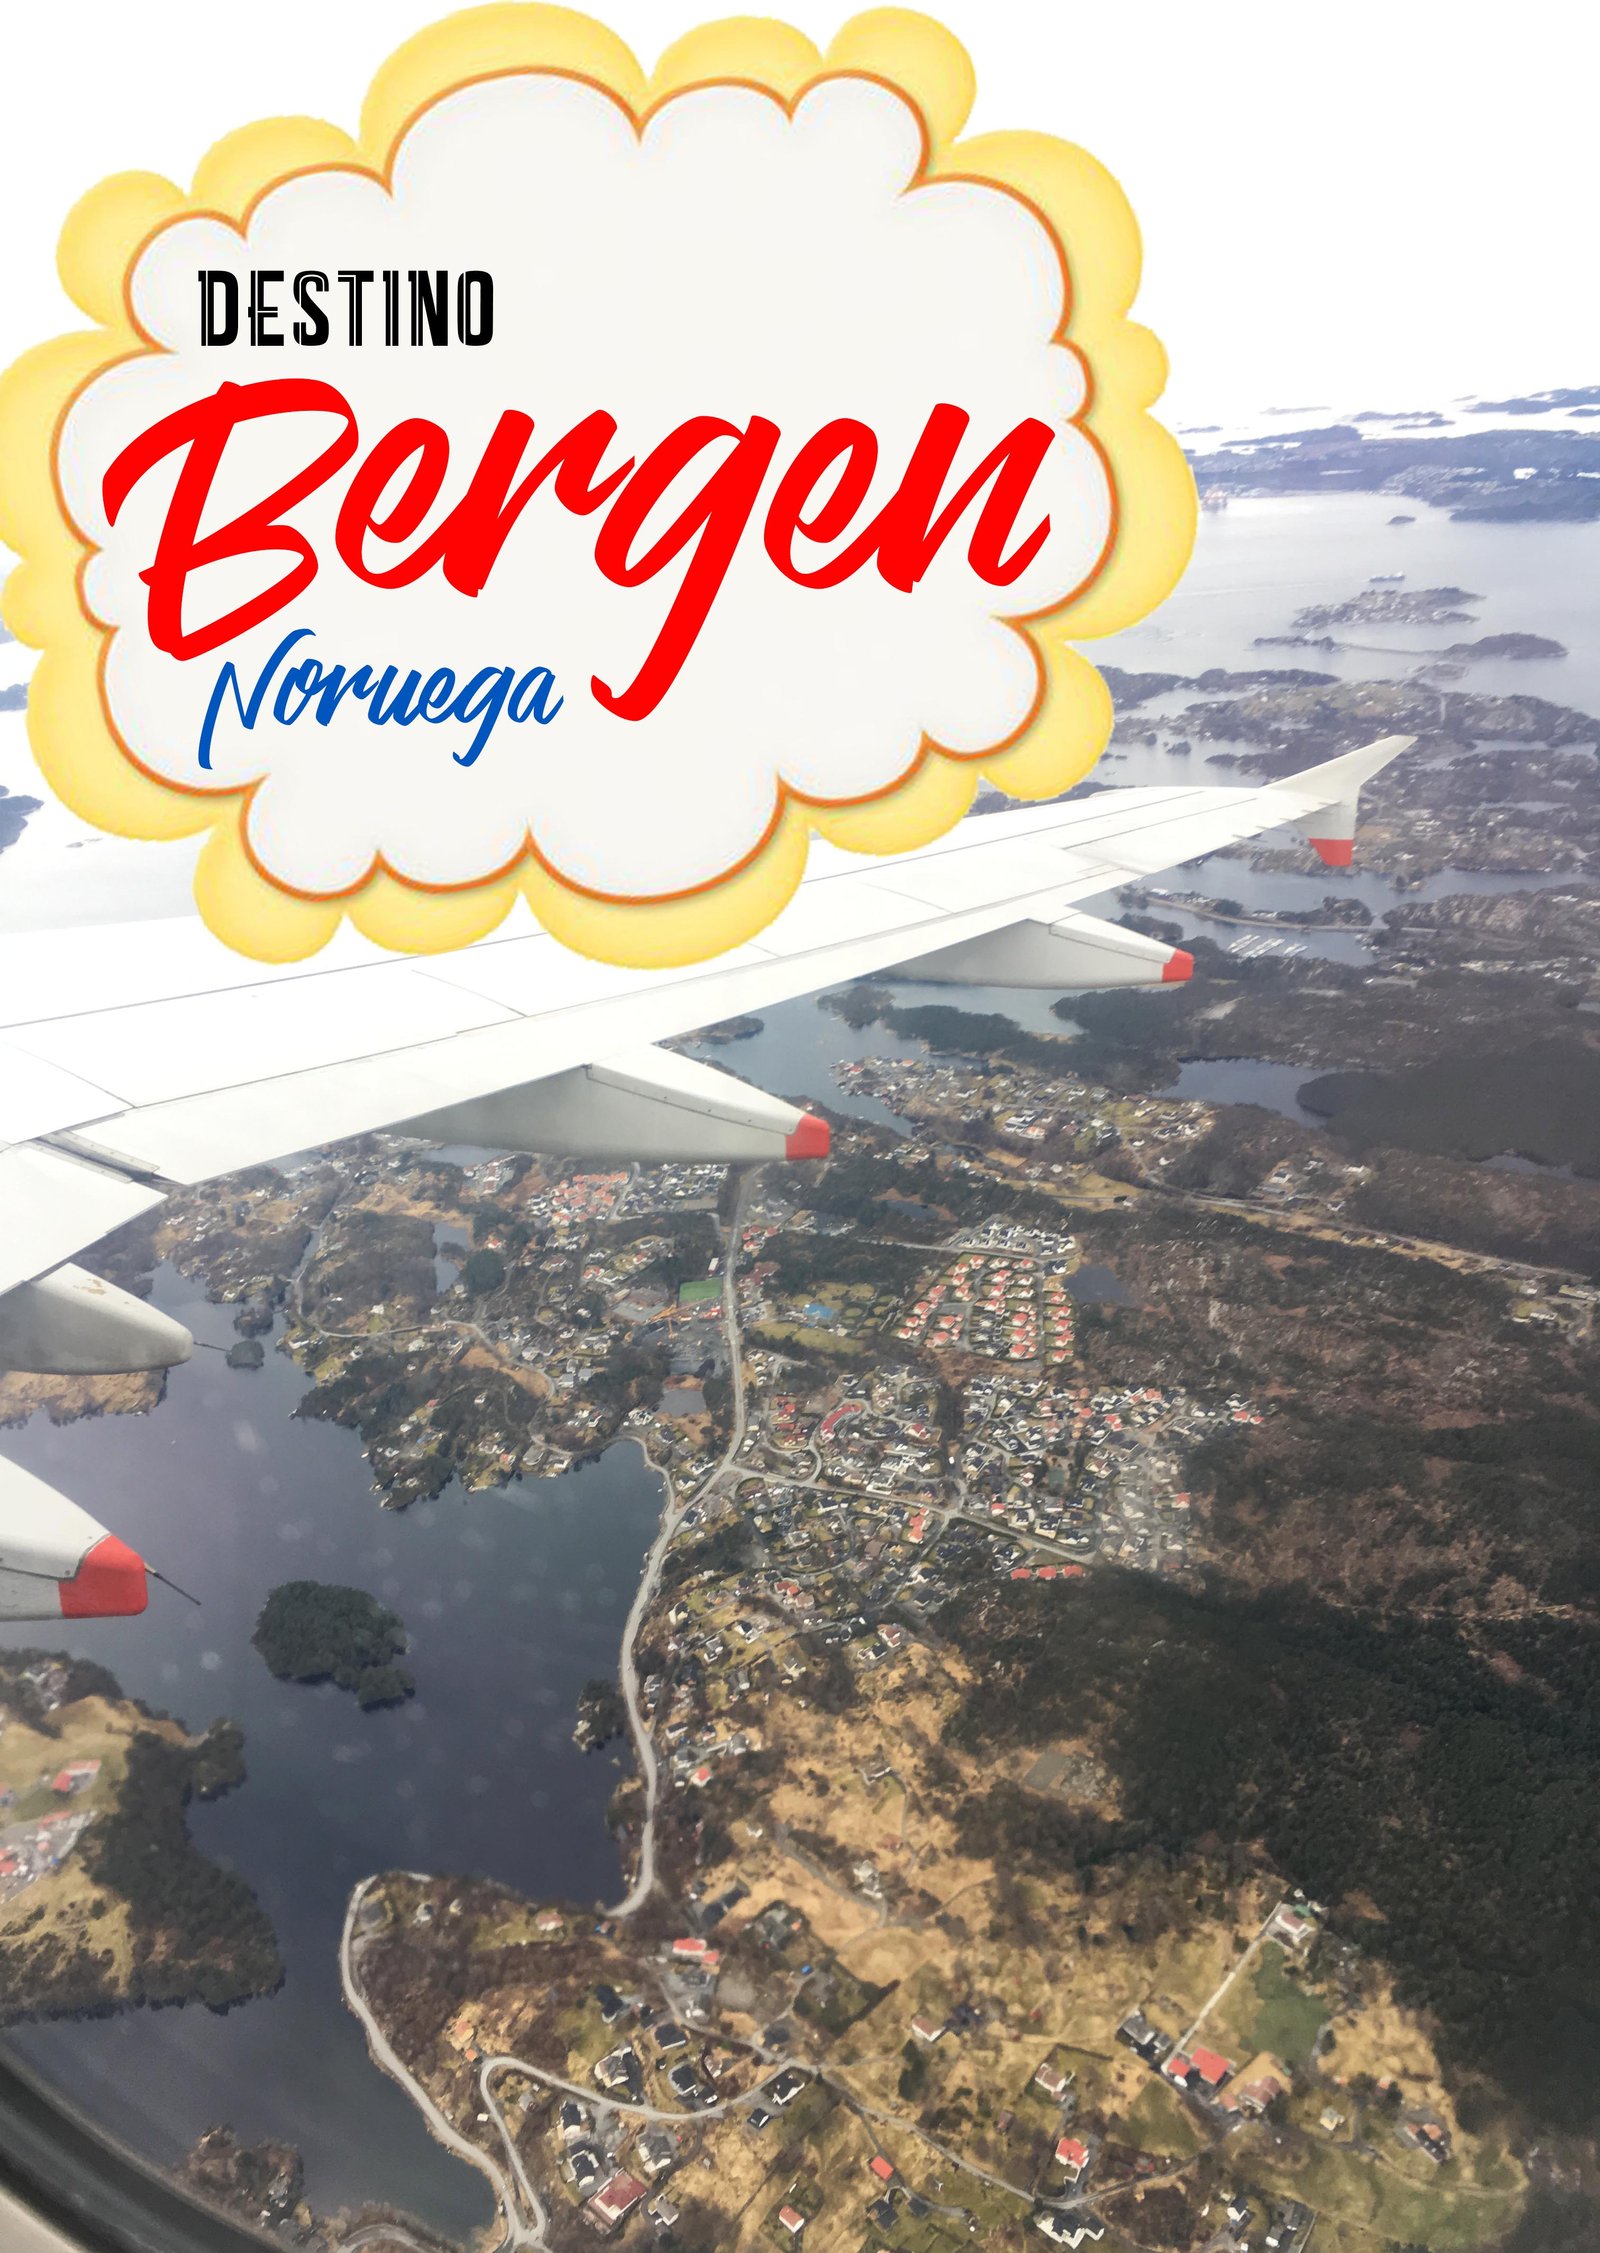 En este momento estás viendo 1ª Crónica de un viaje anunciado: destino BERGEN, Noruega